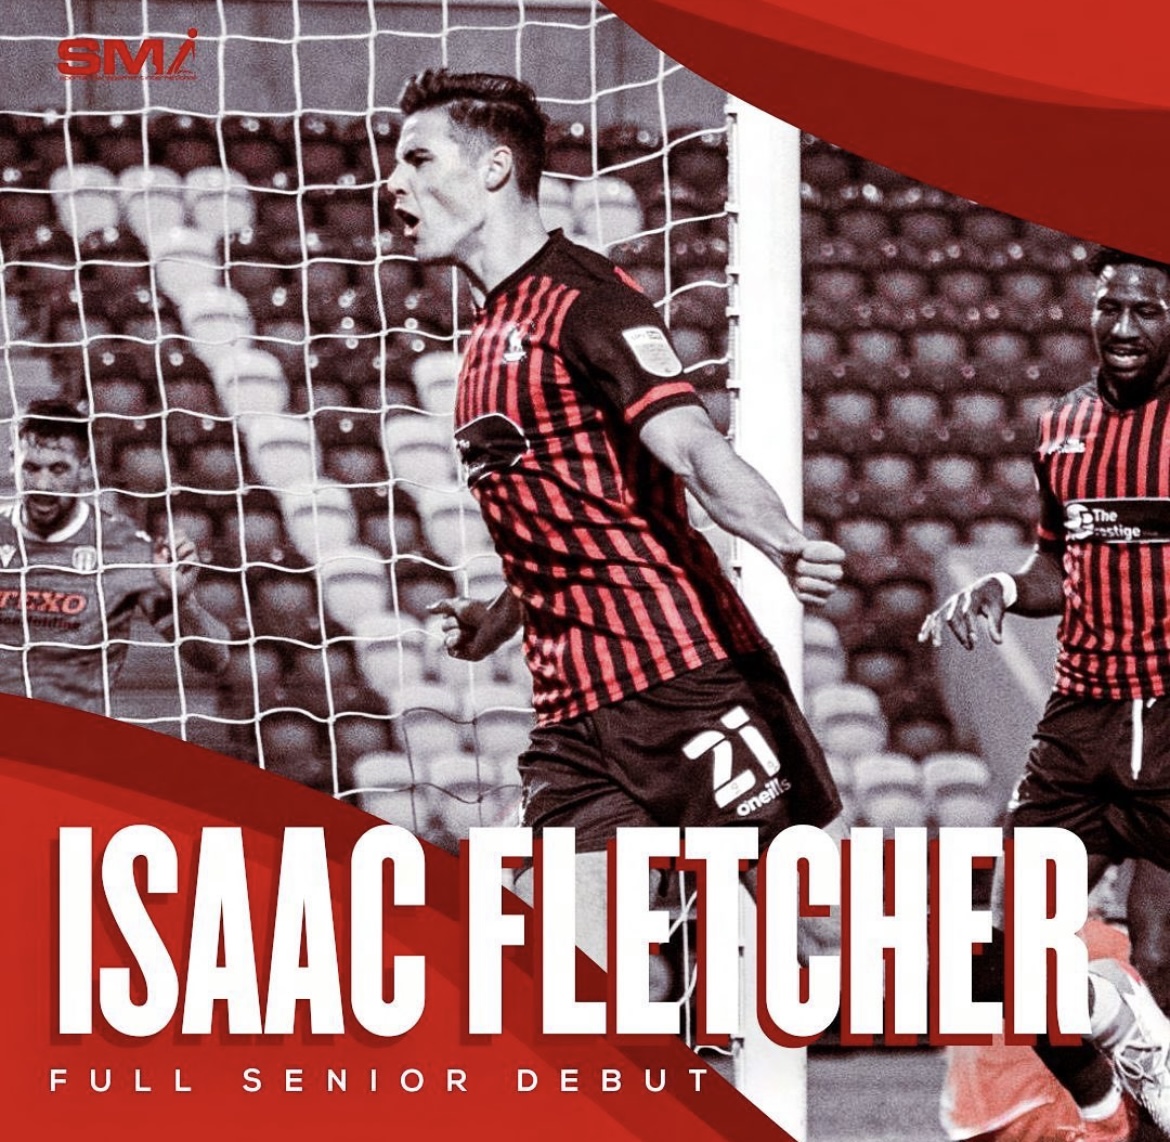 Isaac Fletcher debut